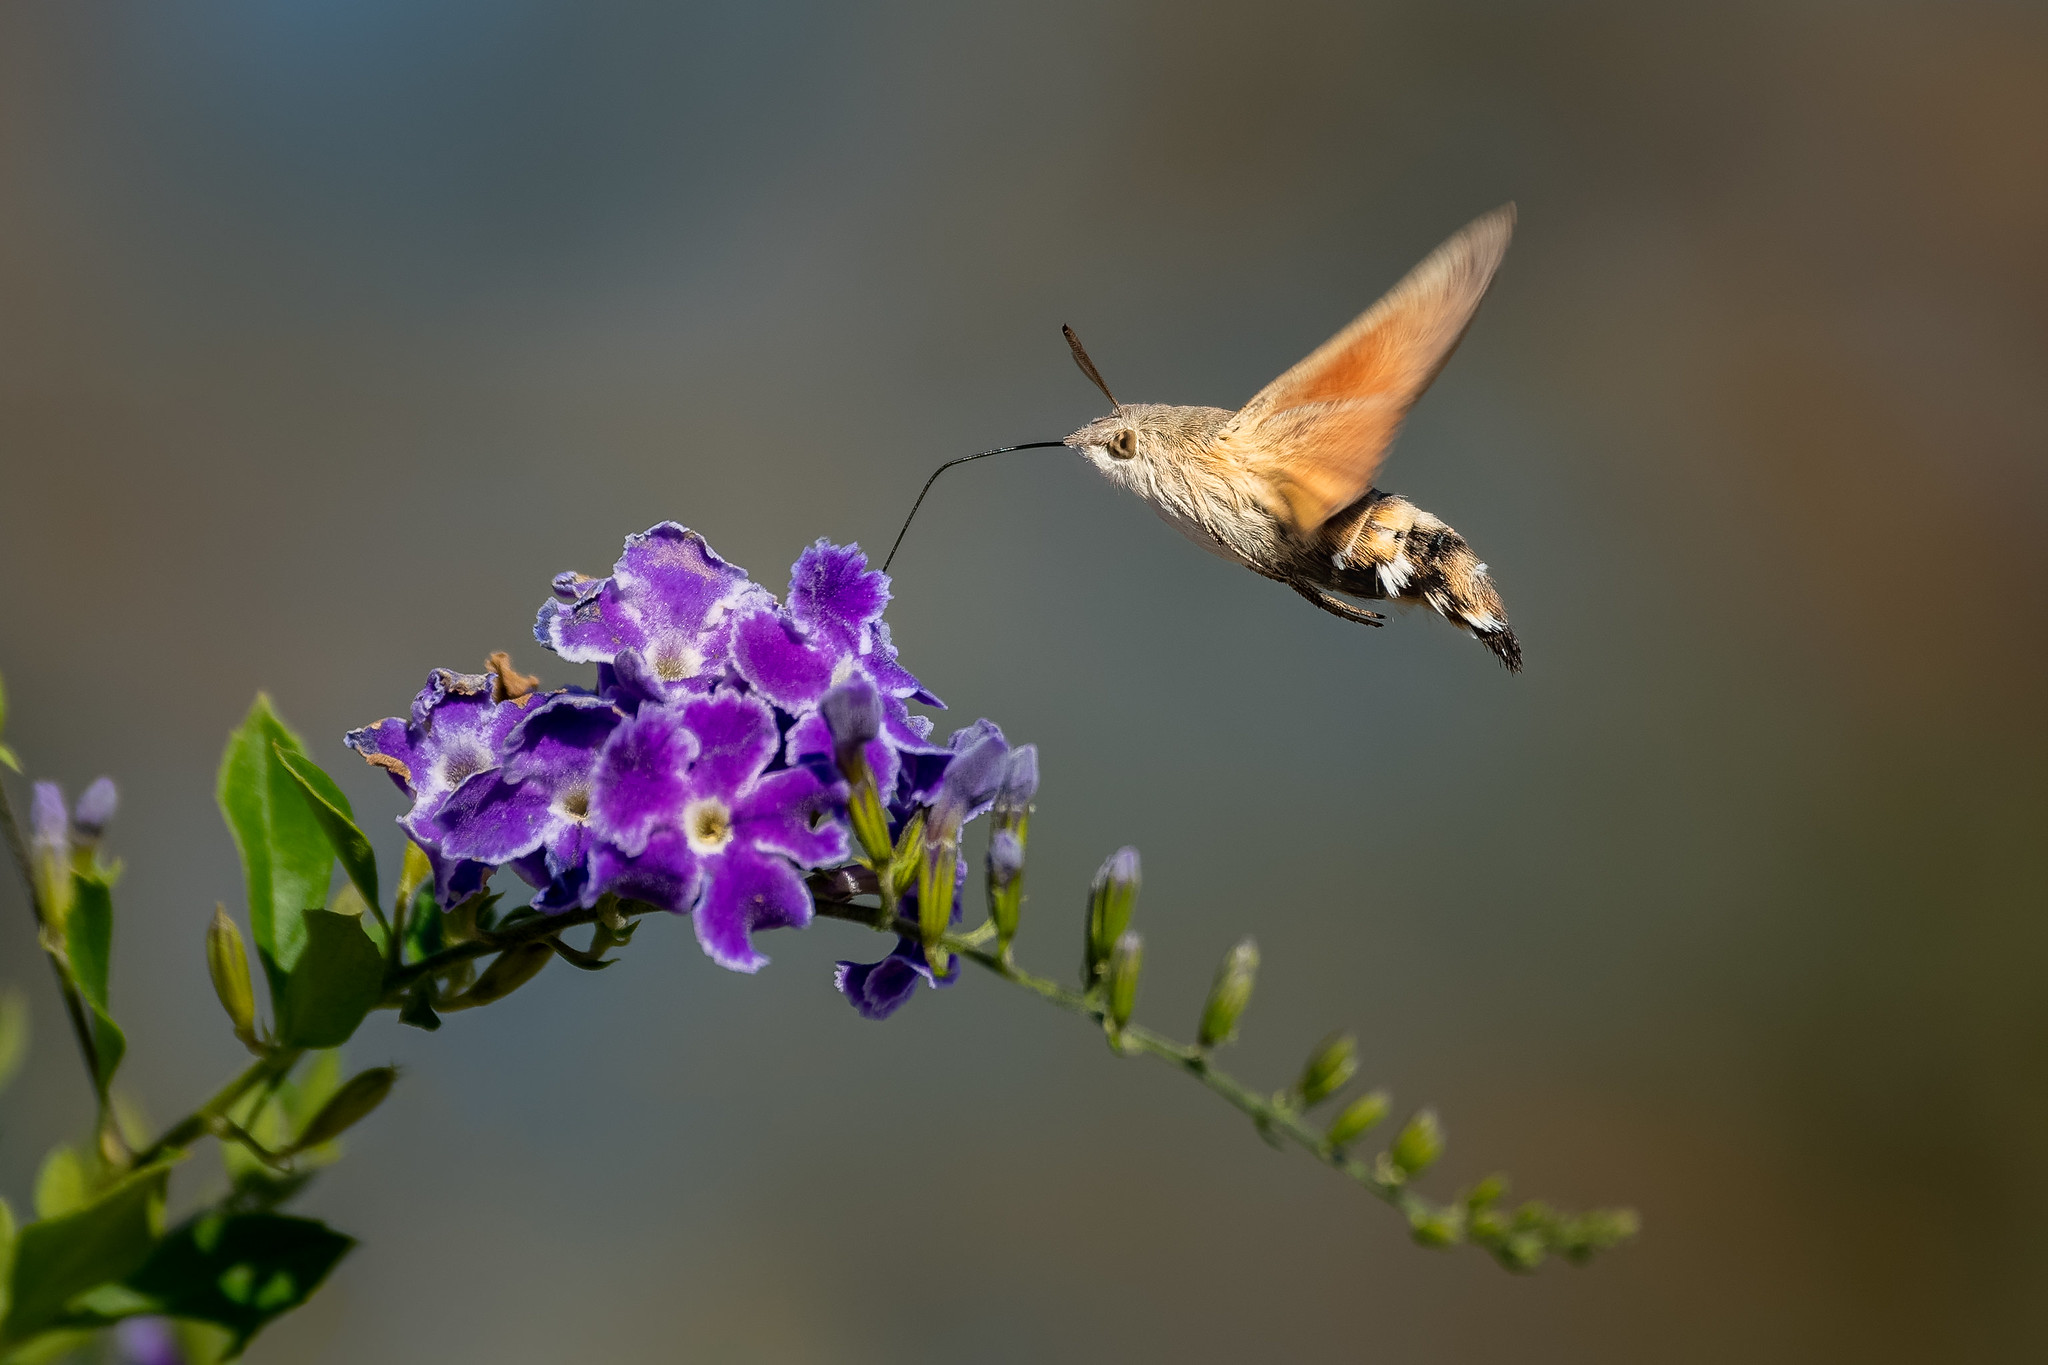 More Hummingbird Hawk-moth photos - Craig Rogers